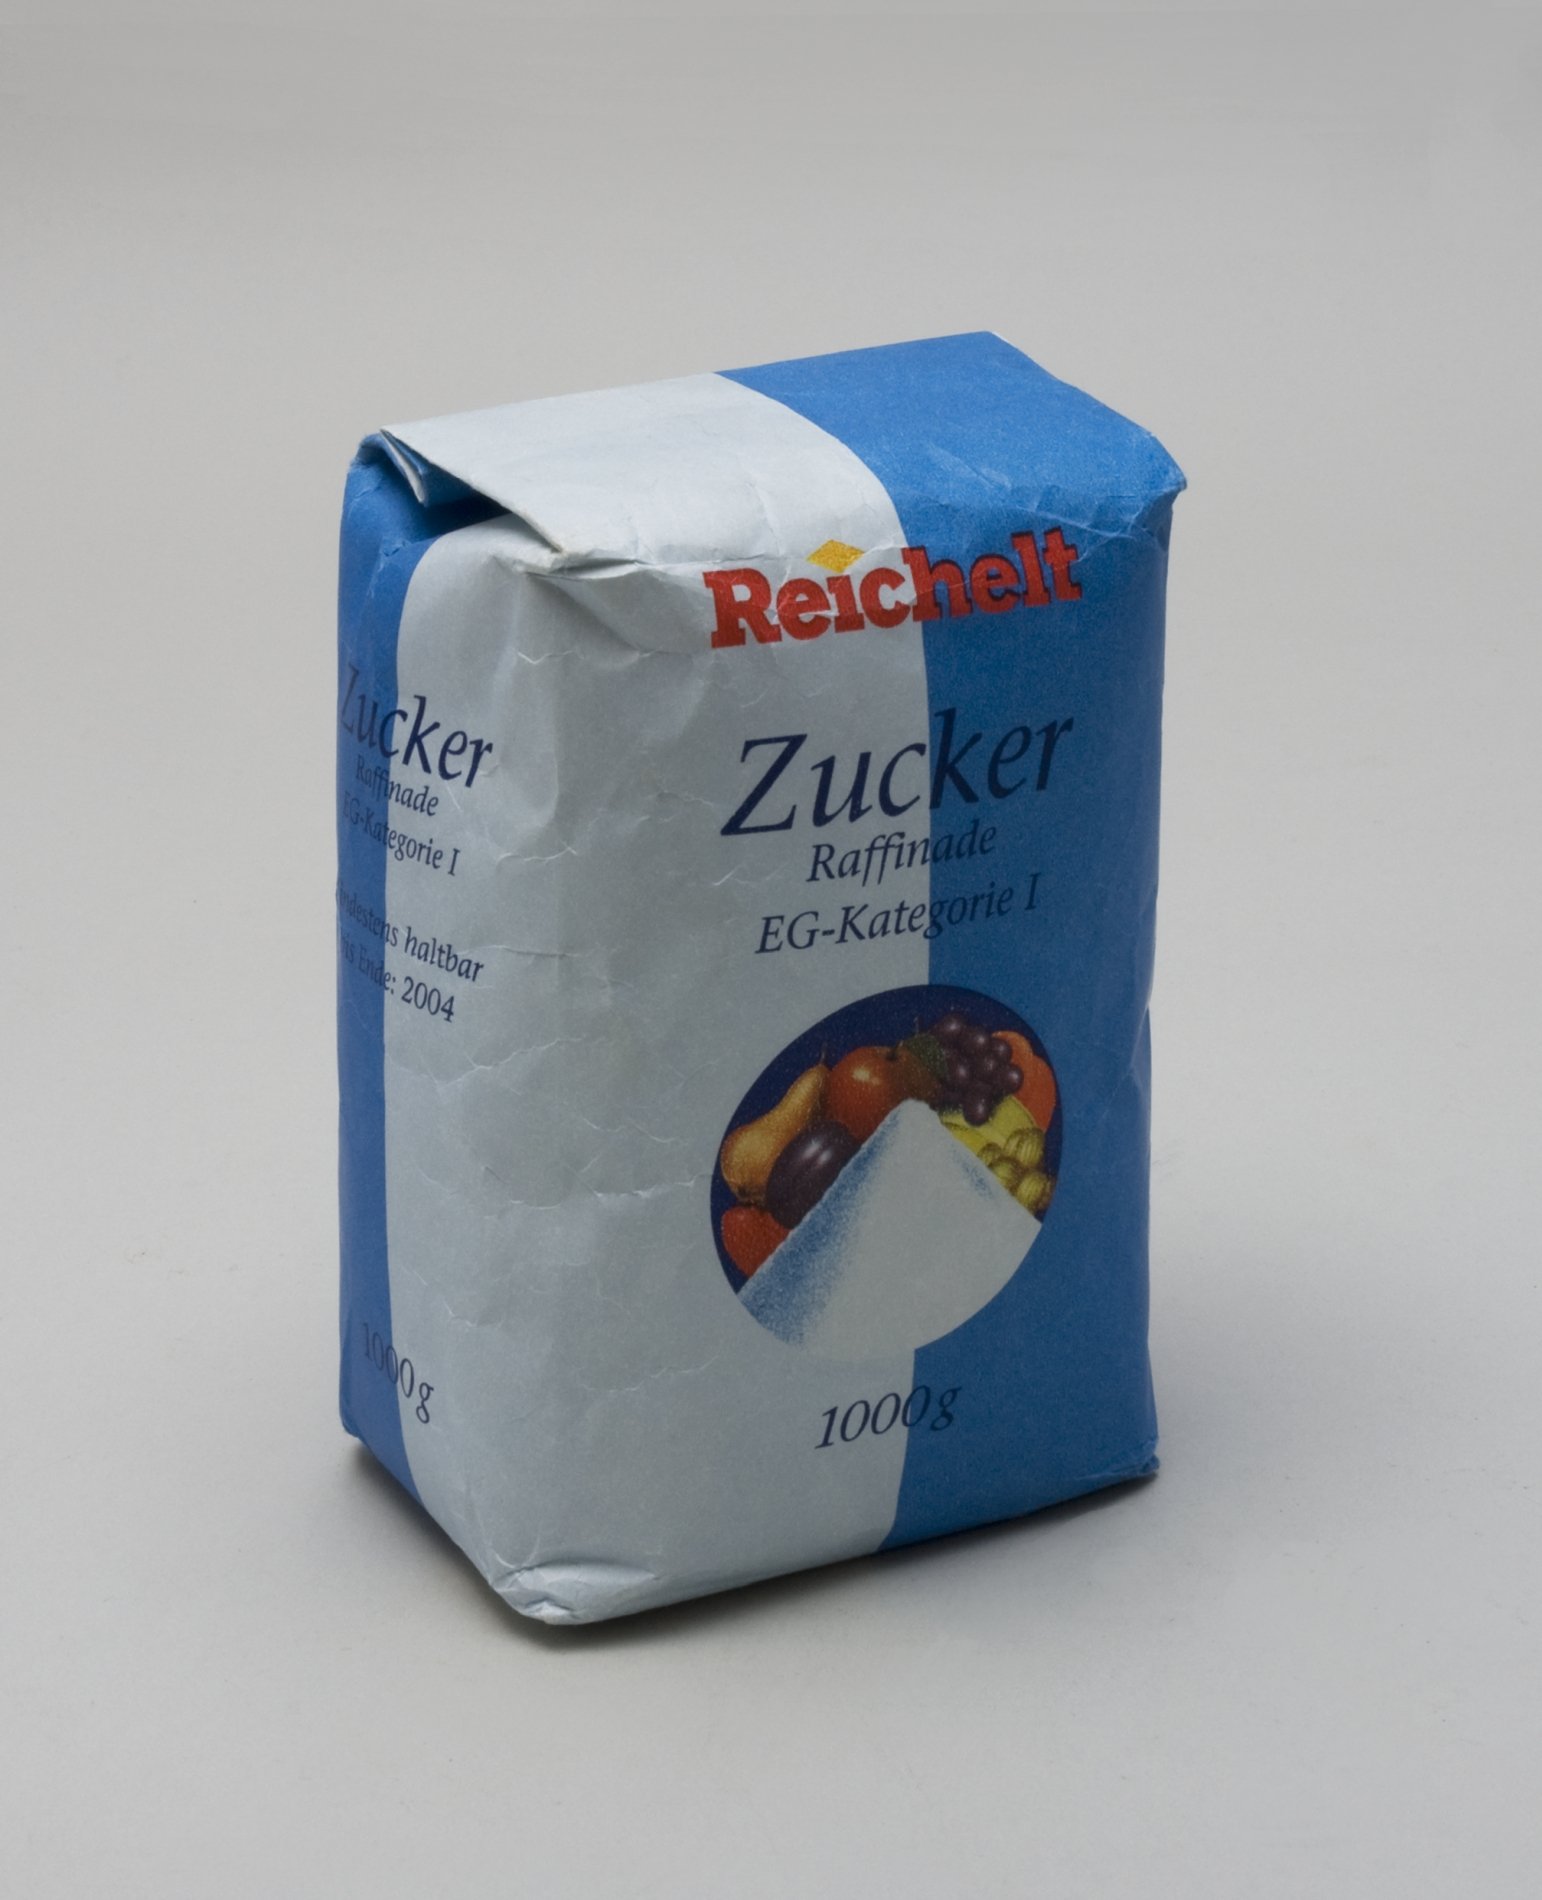 Zucker-Verpackung der "Reichelt" Eigenmarke (Stiftung Domäne Dahlem - Landgut und Museum, Weiternutzung nur mit Genehmigung des Museums CC BY-NC-SA)